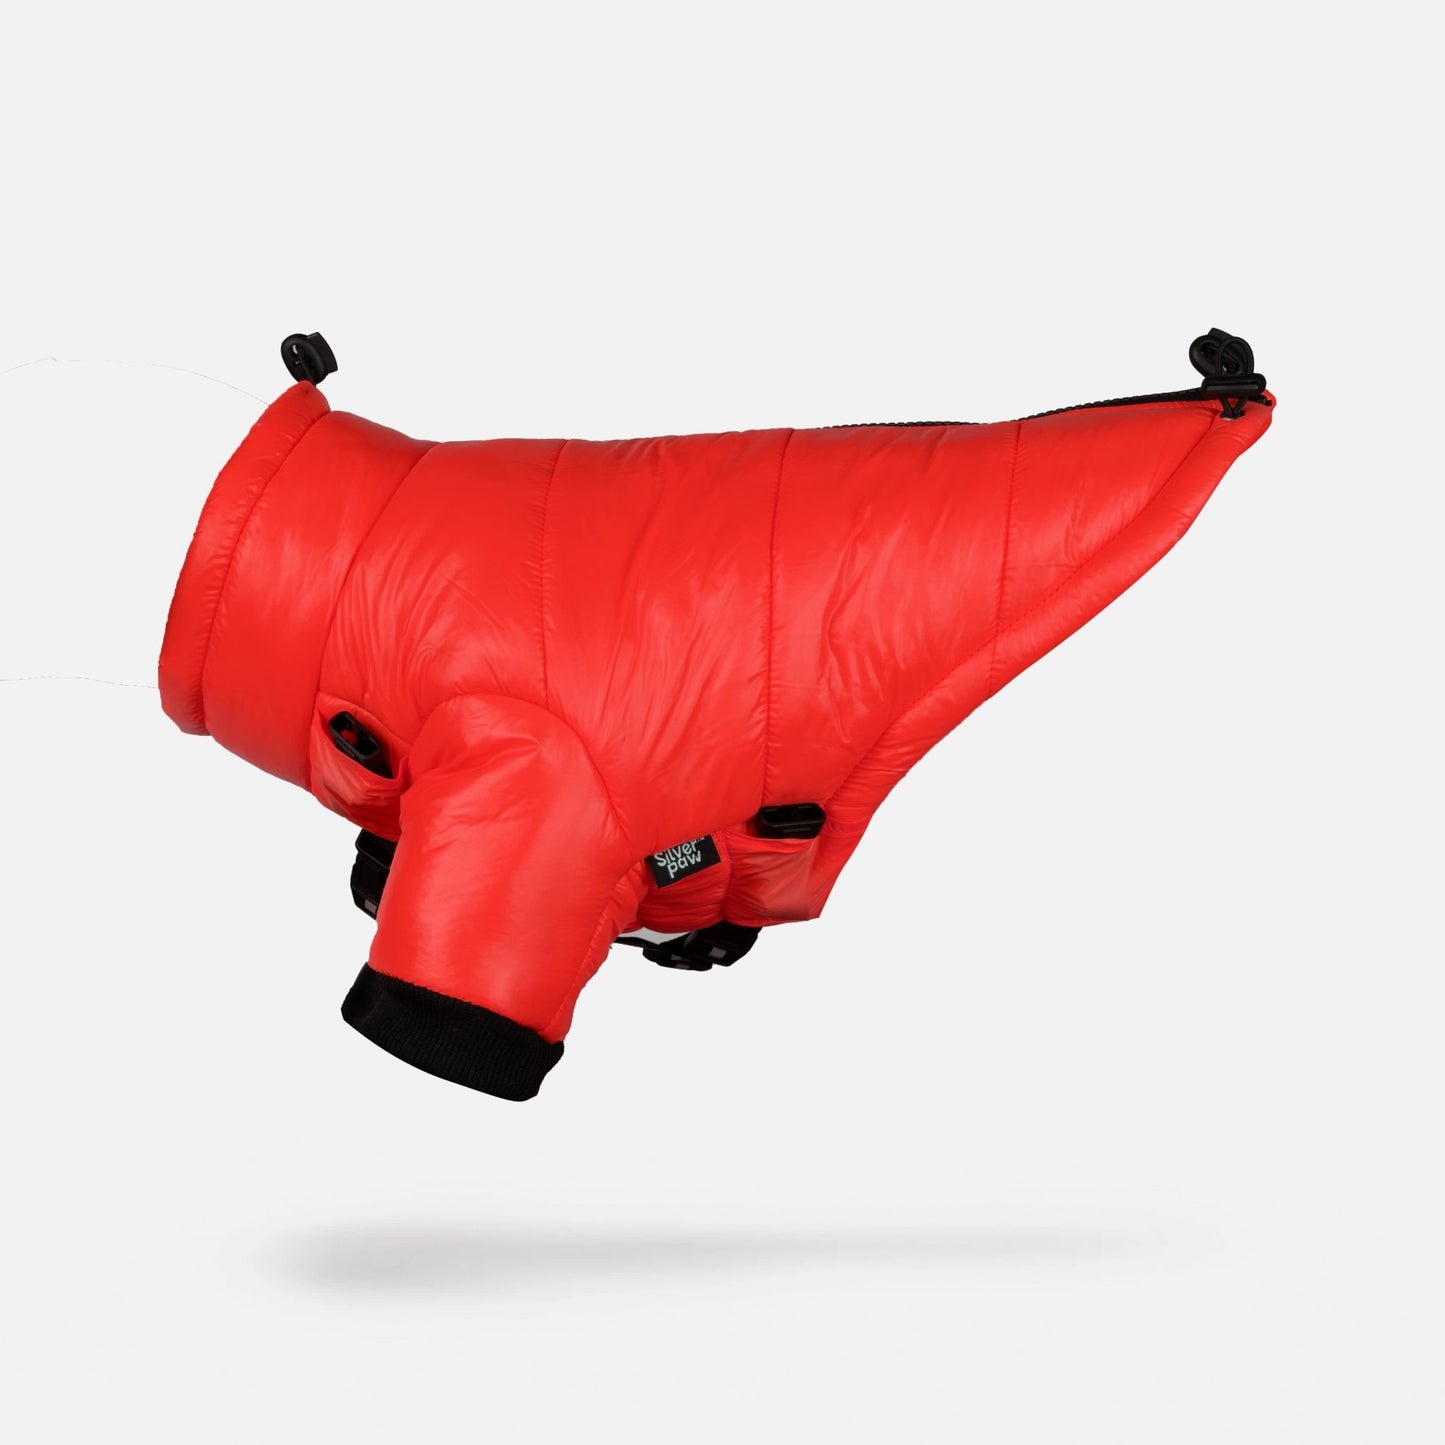 Whistler Full Body Dog Snowsuit - Red